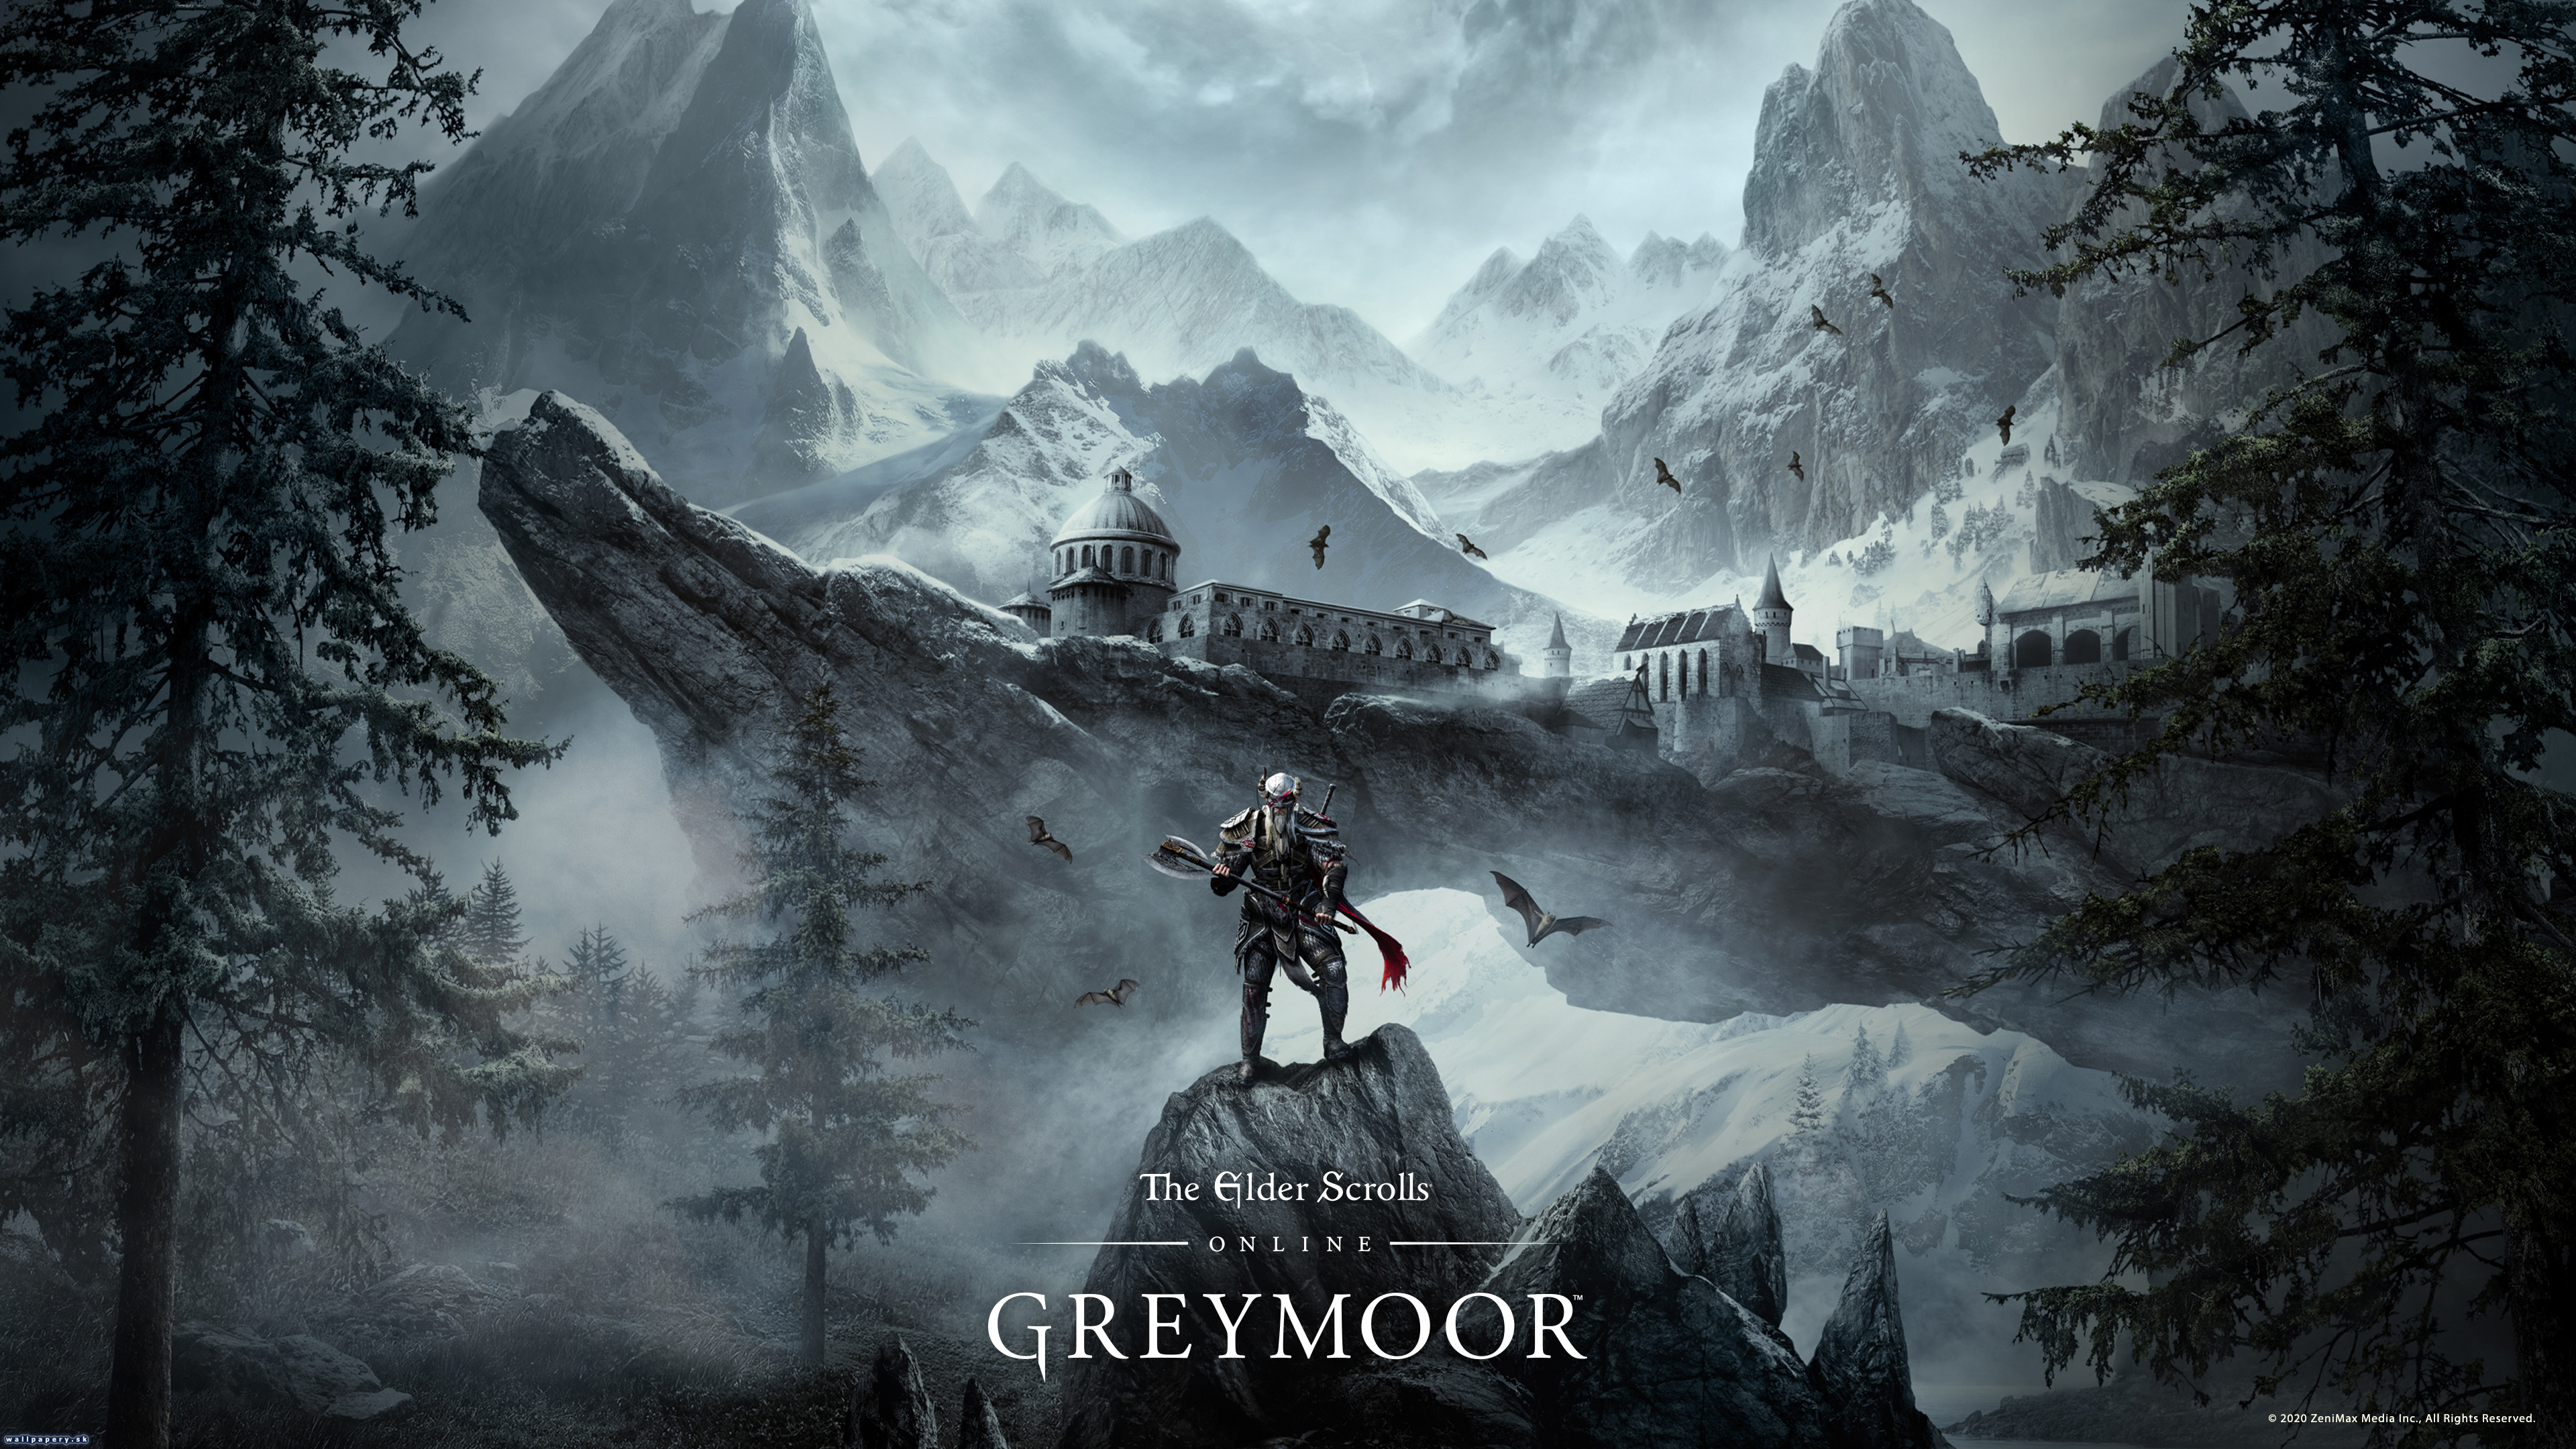 The Elder Scrolls Online: Greymoor - wallpaper 2